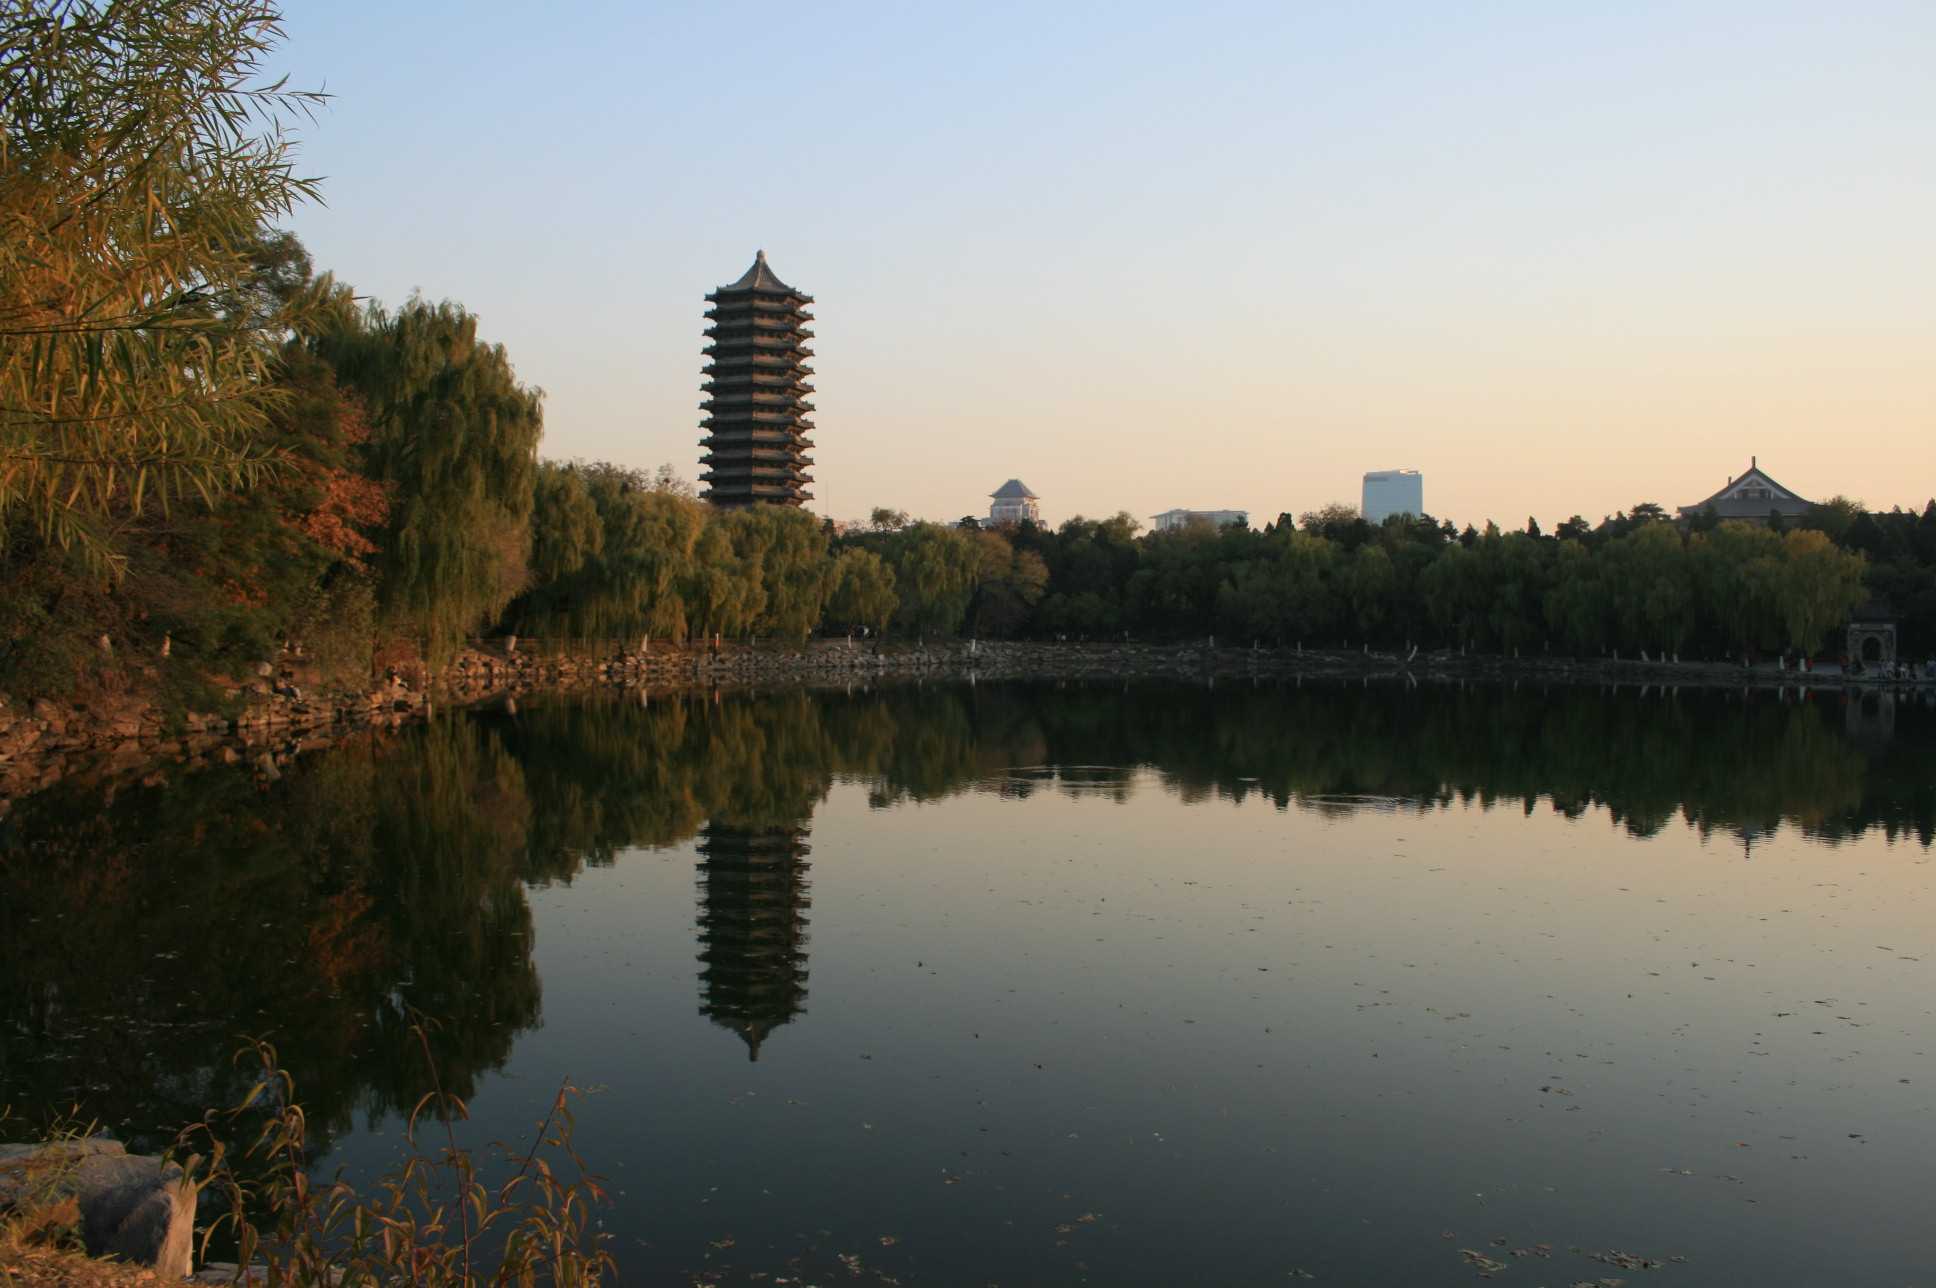 原创北京一处被忽略的古塔建筑原是校园供水塔就在北京大学校园内